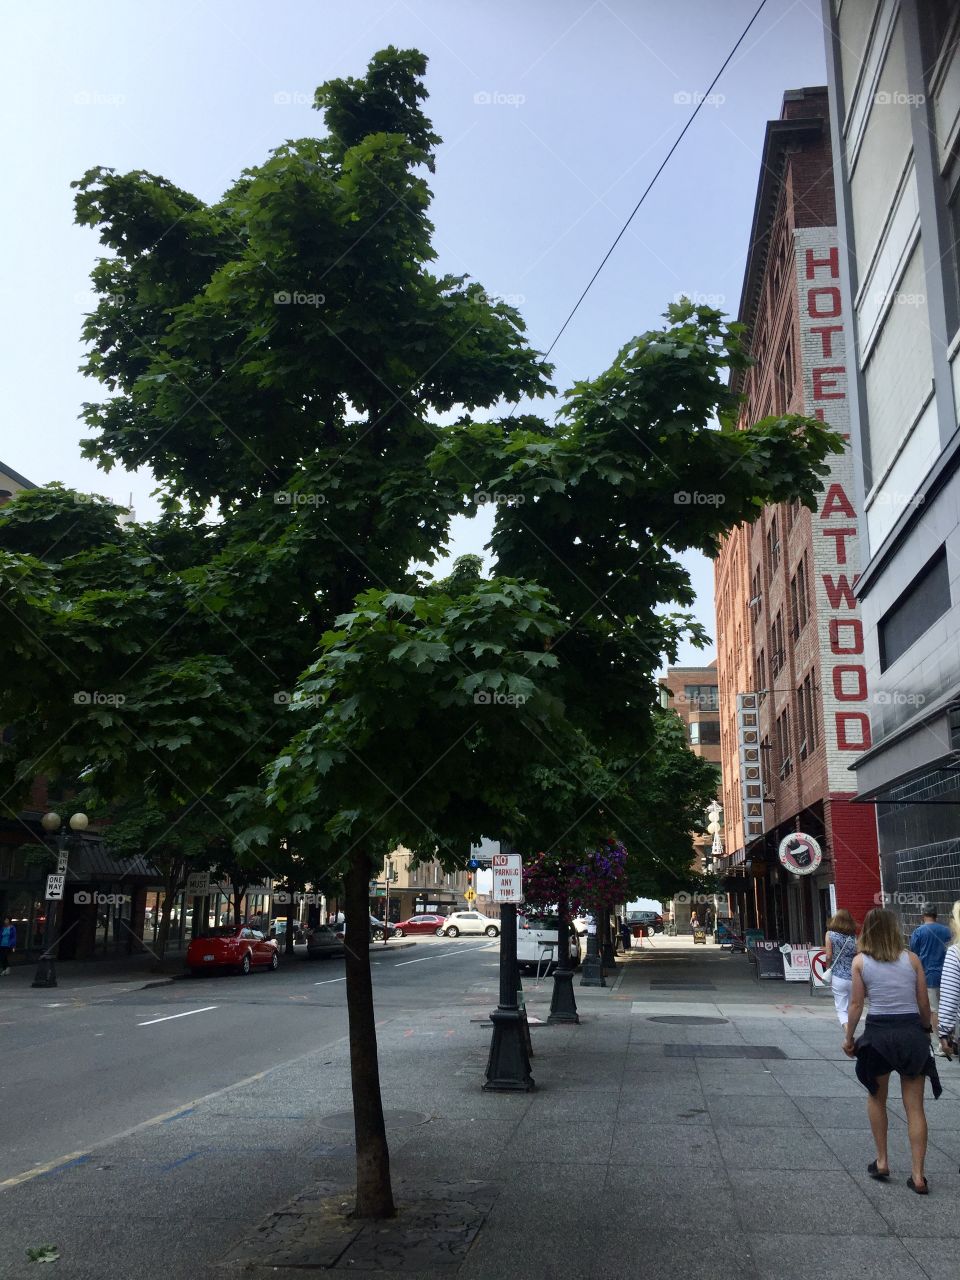 A tree growing on the sidewalks of Seattle